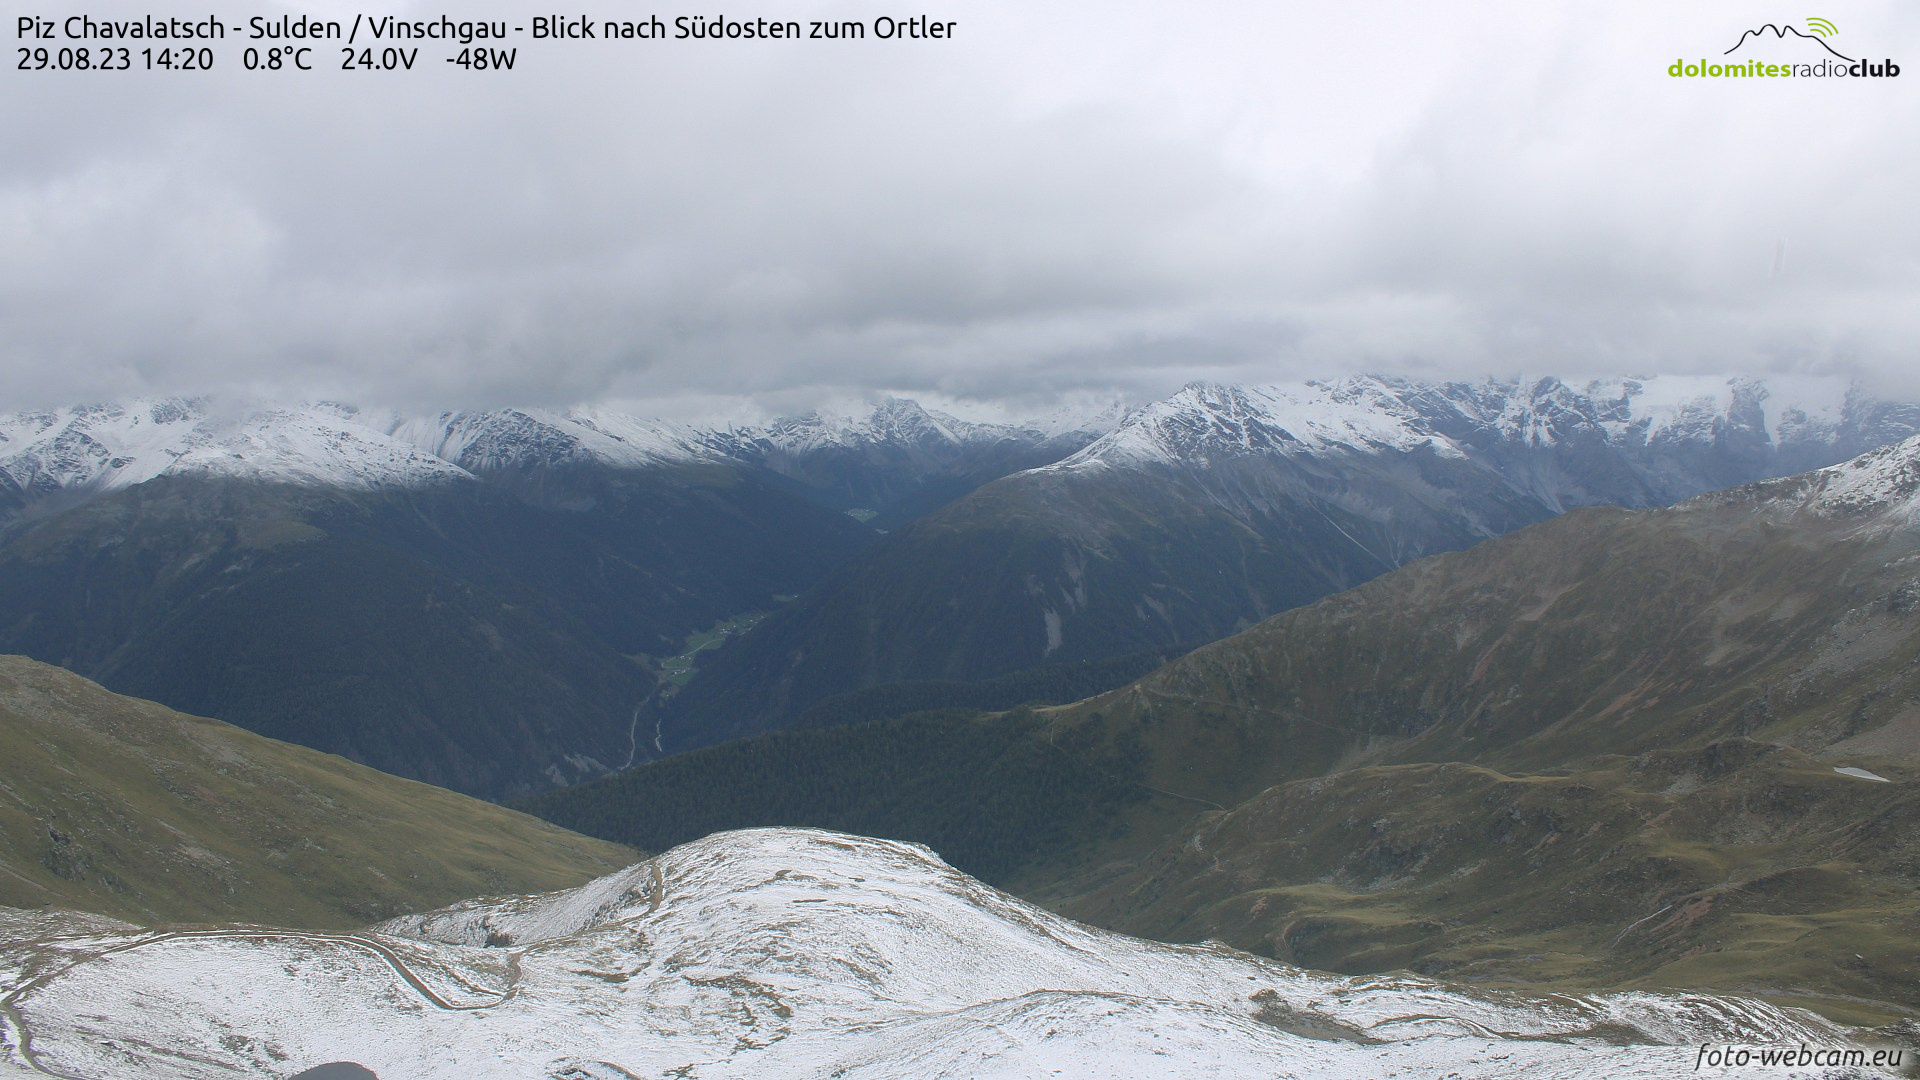 Veel neerslag in delen van de Alpen met sneeuw in hooggebergte